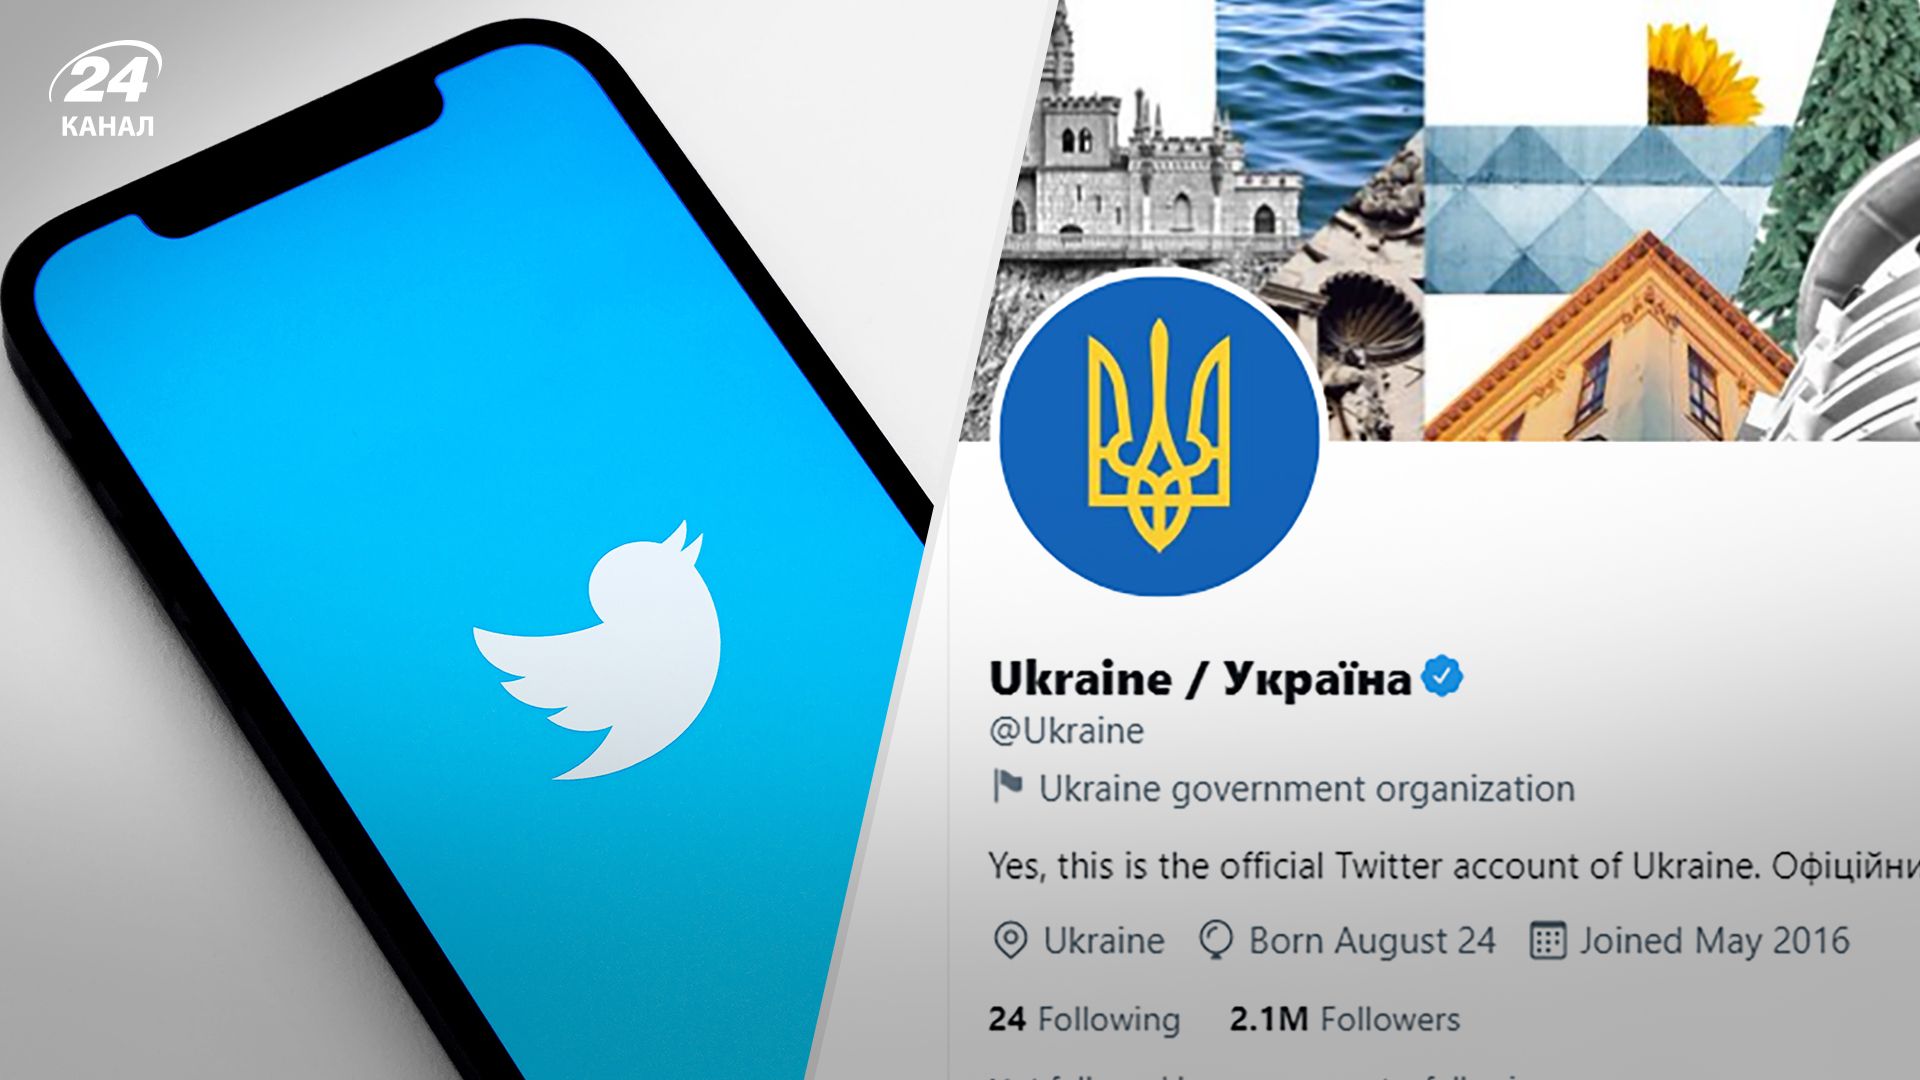 Новый флешмоб в твиттере – какое слово выбрала Украина